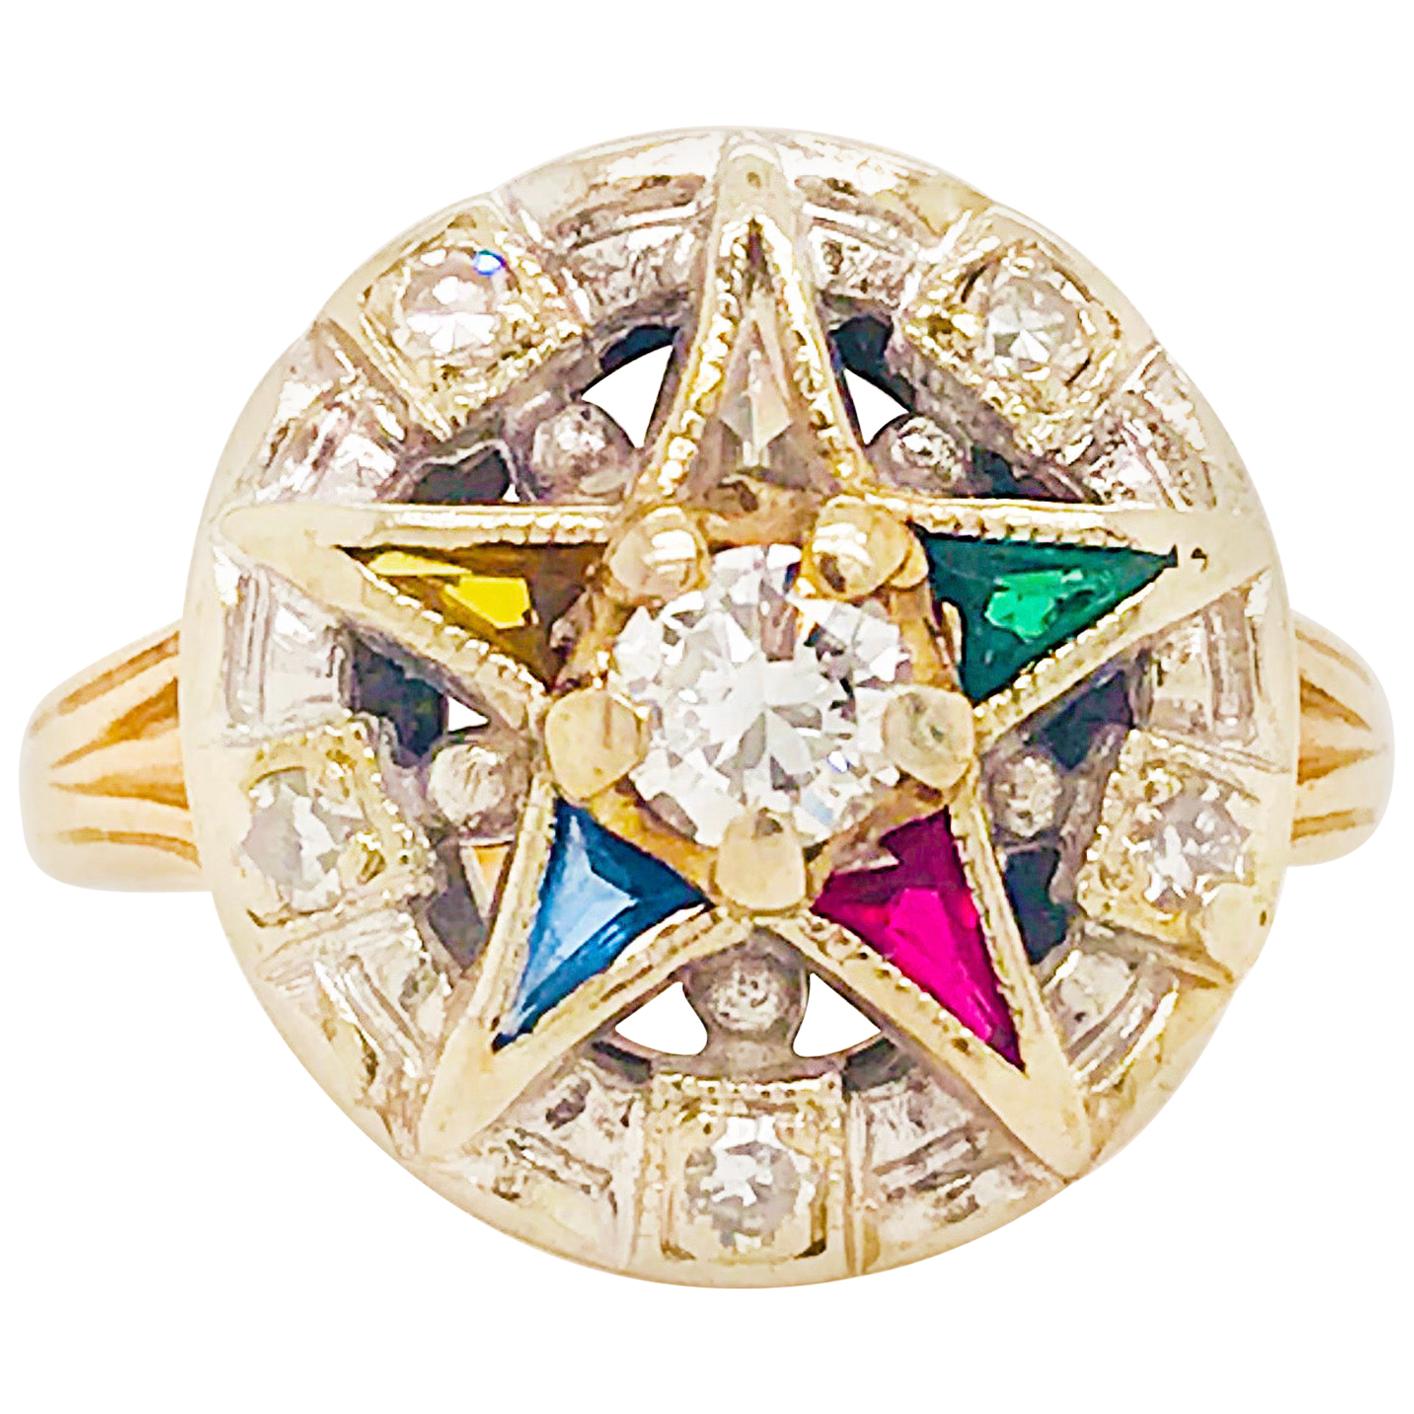 Eastern Star Diamond and Gemstone Estate Ring 14 Karat Gold Spiritual Star Ring